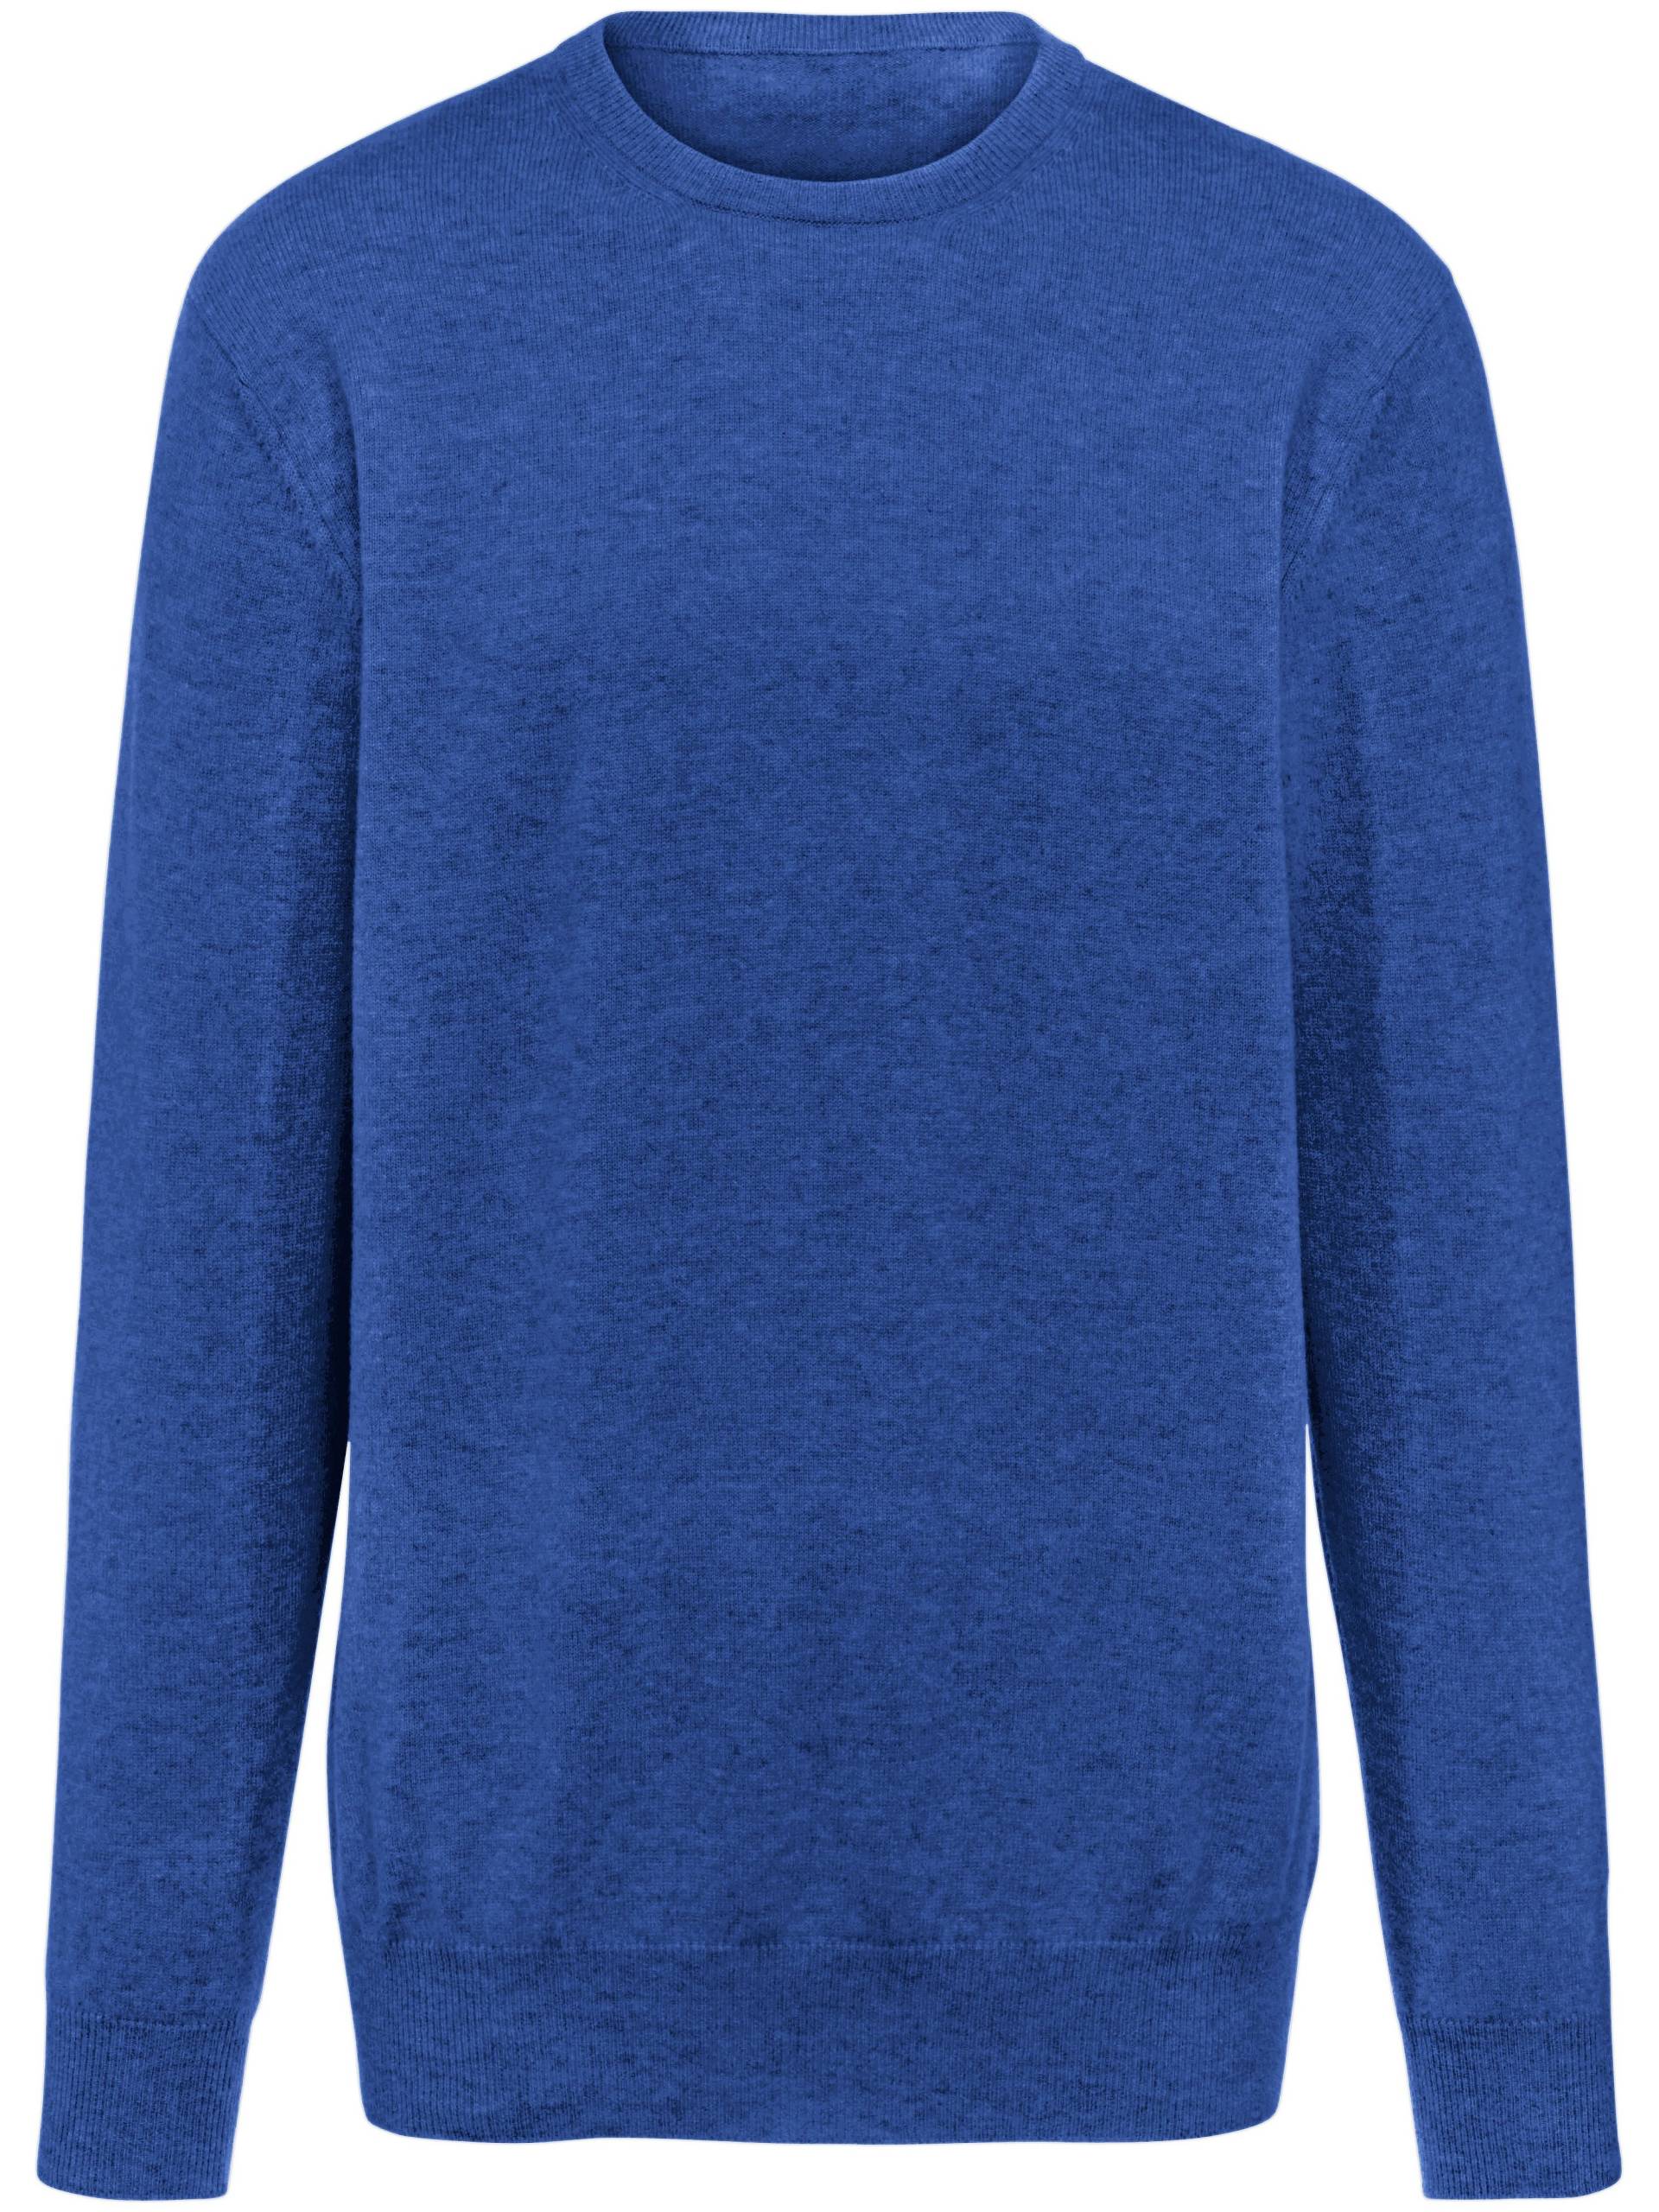 Pullover aus 100% Premium-Kaschmir Modell Ralph Peter Hahn Cashmere blau Größe: 50 von Peter Hahn Cashmere